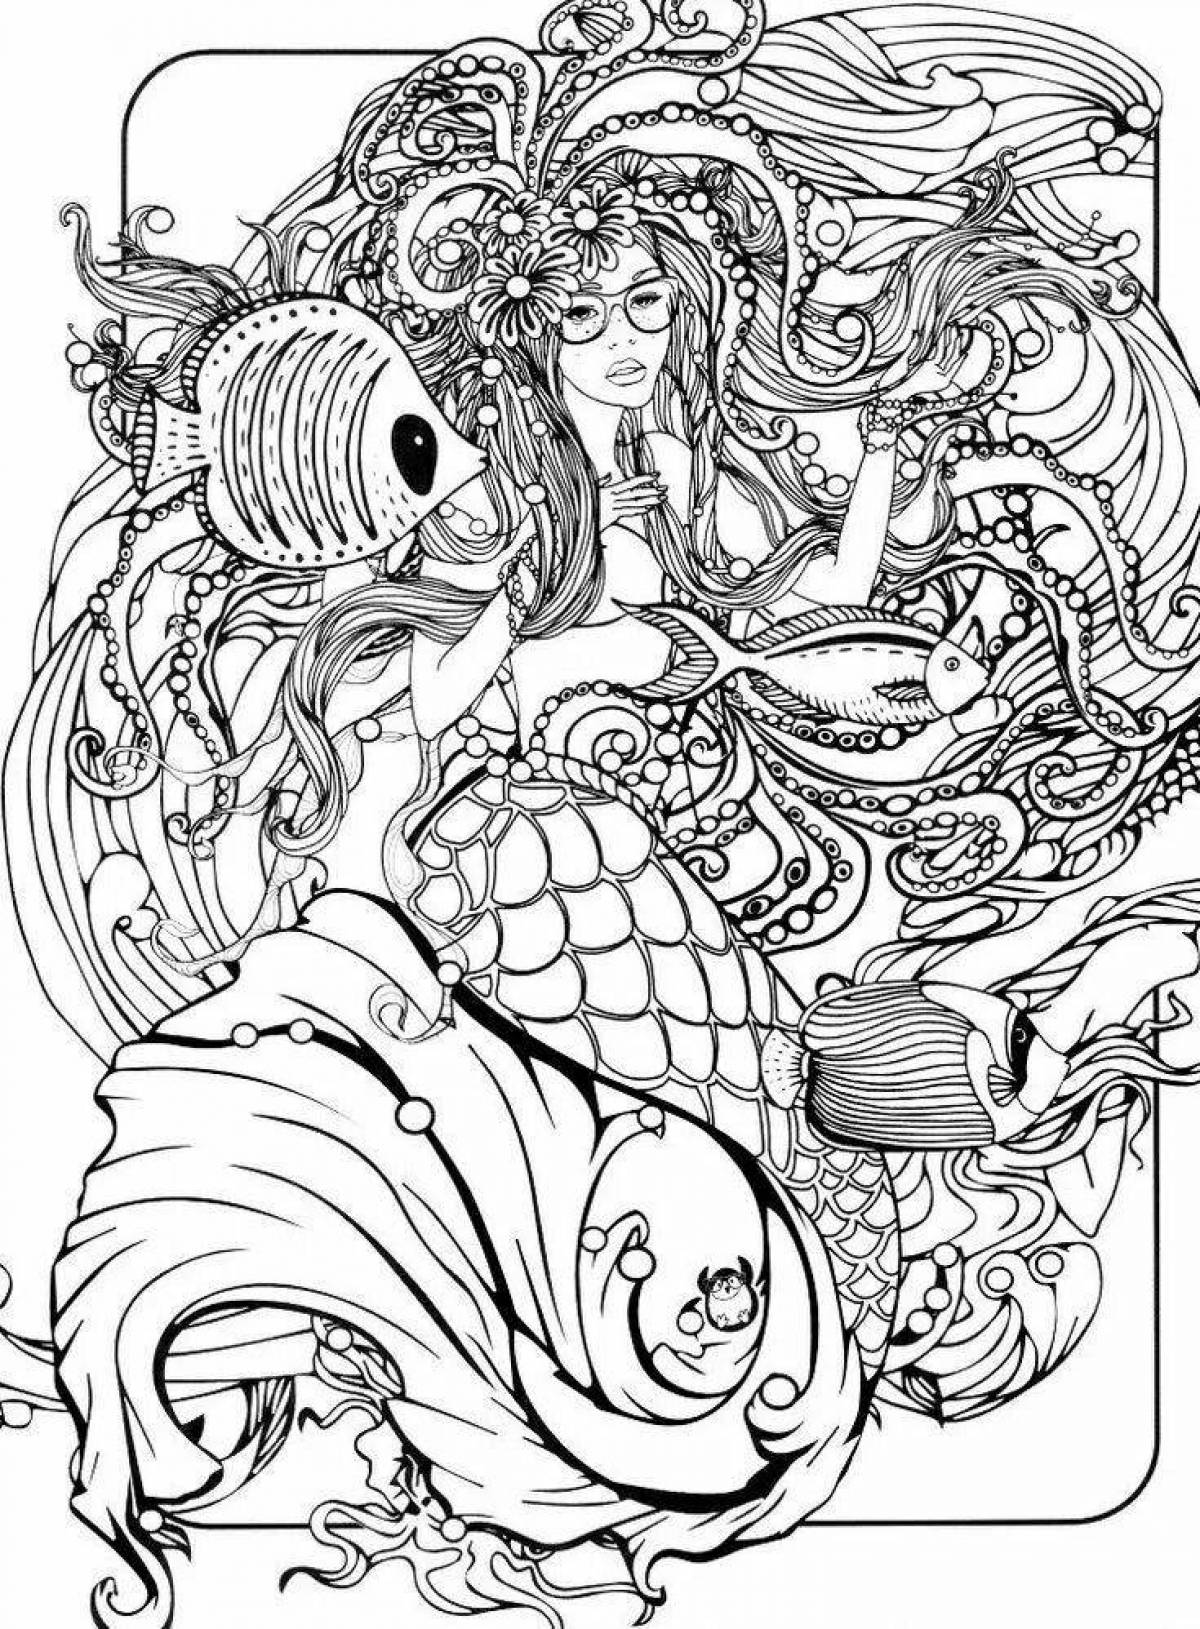 Calming coloring book antistress mermaid